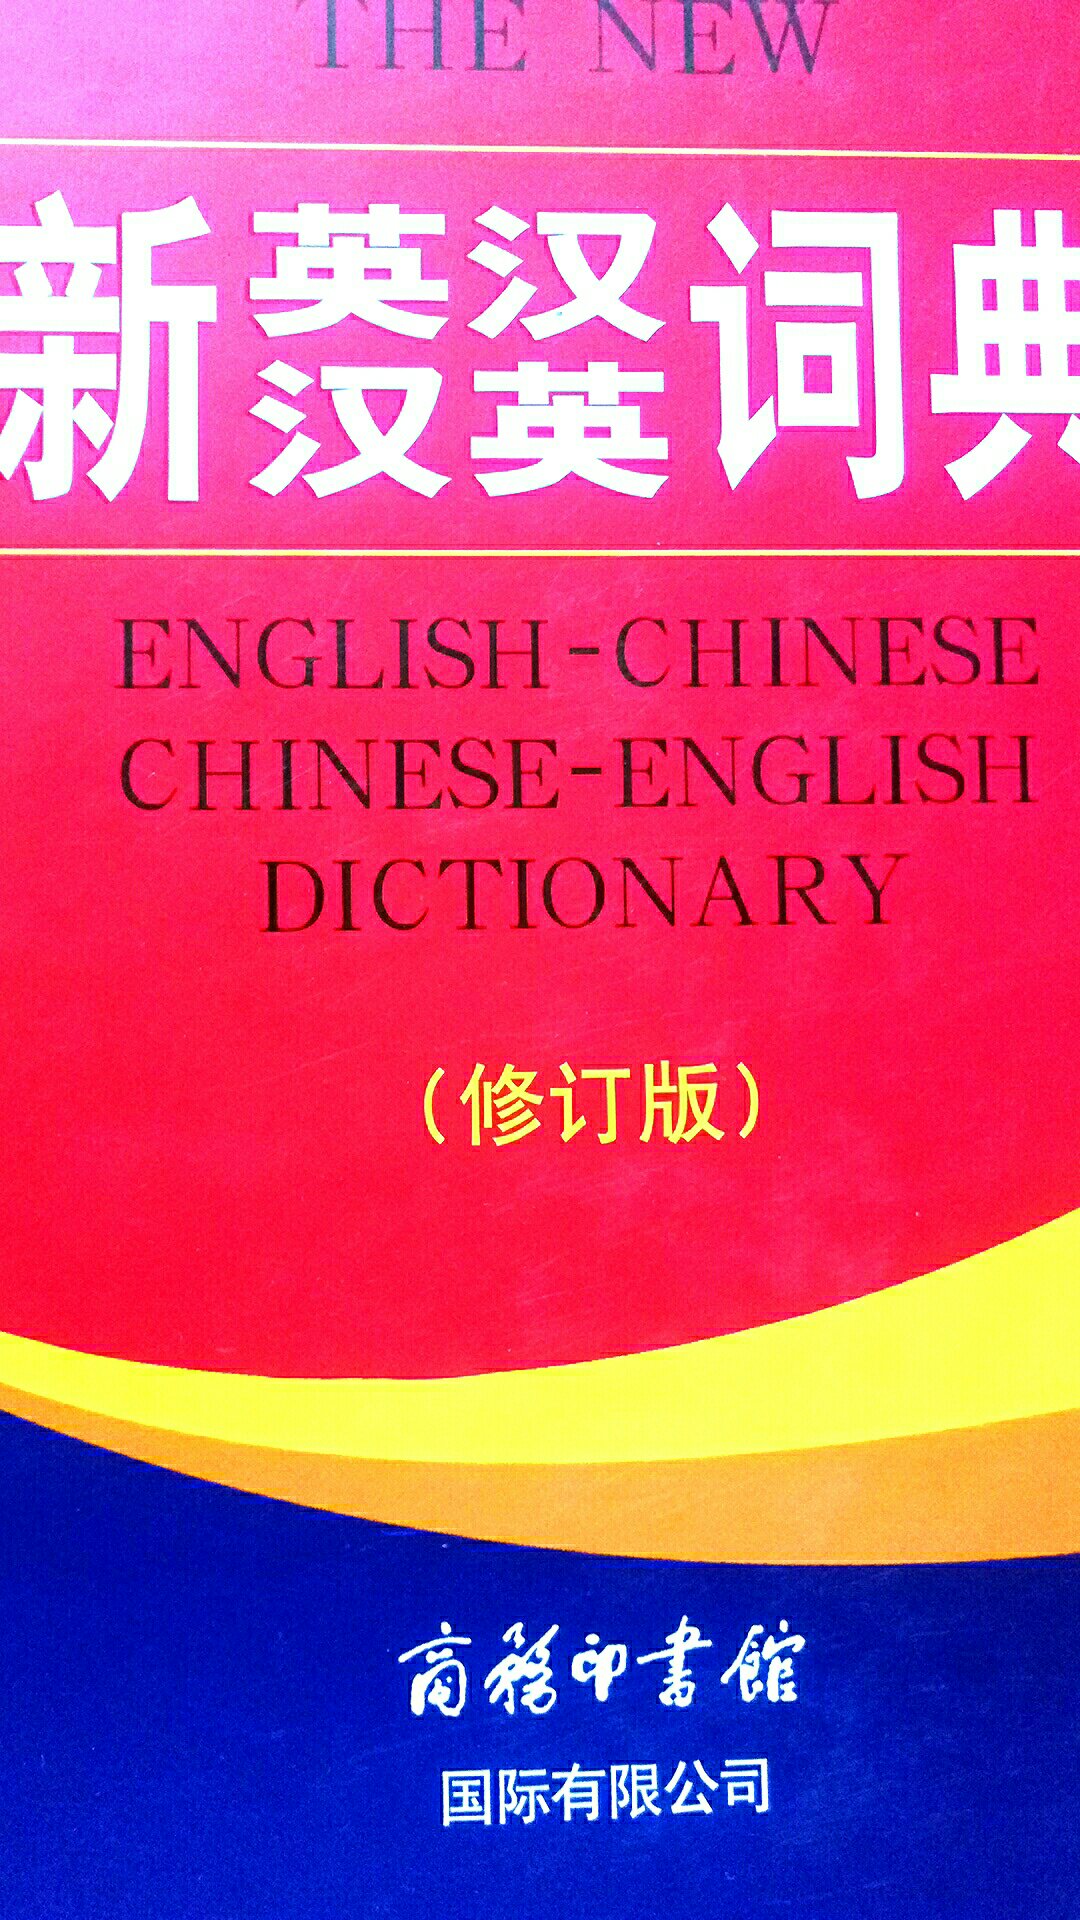 这个词典是新版的，个头很大，内容很全，高中使用应该是足够了，印刷包装都很不错。